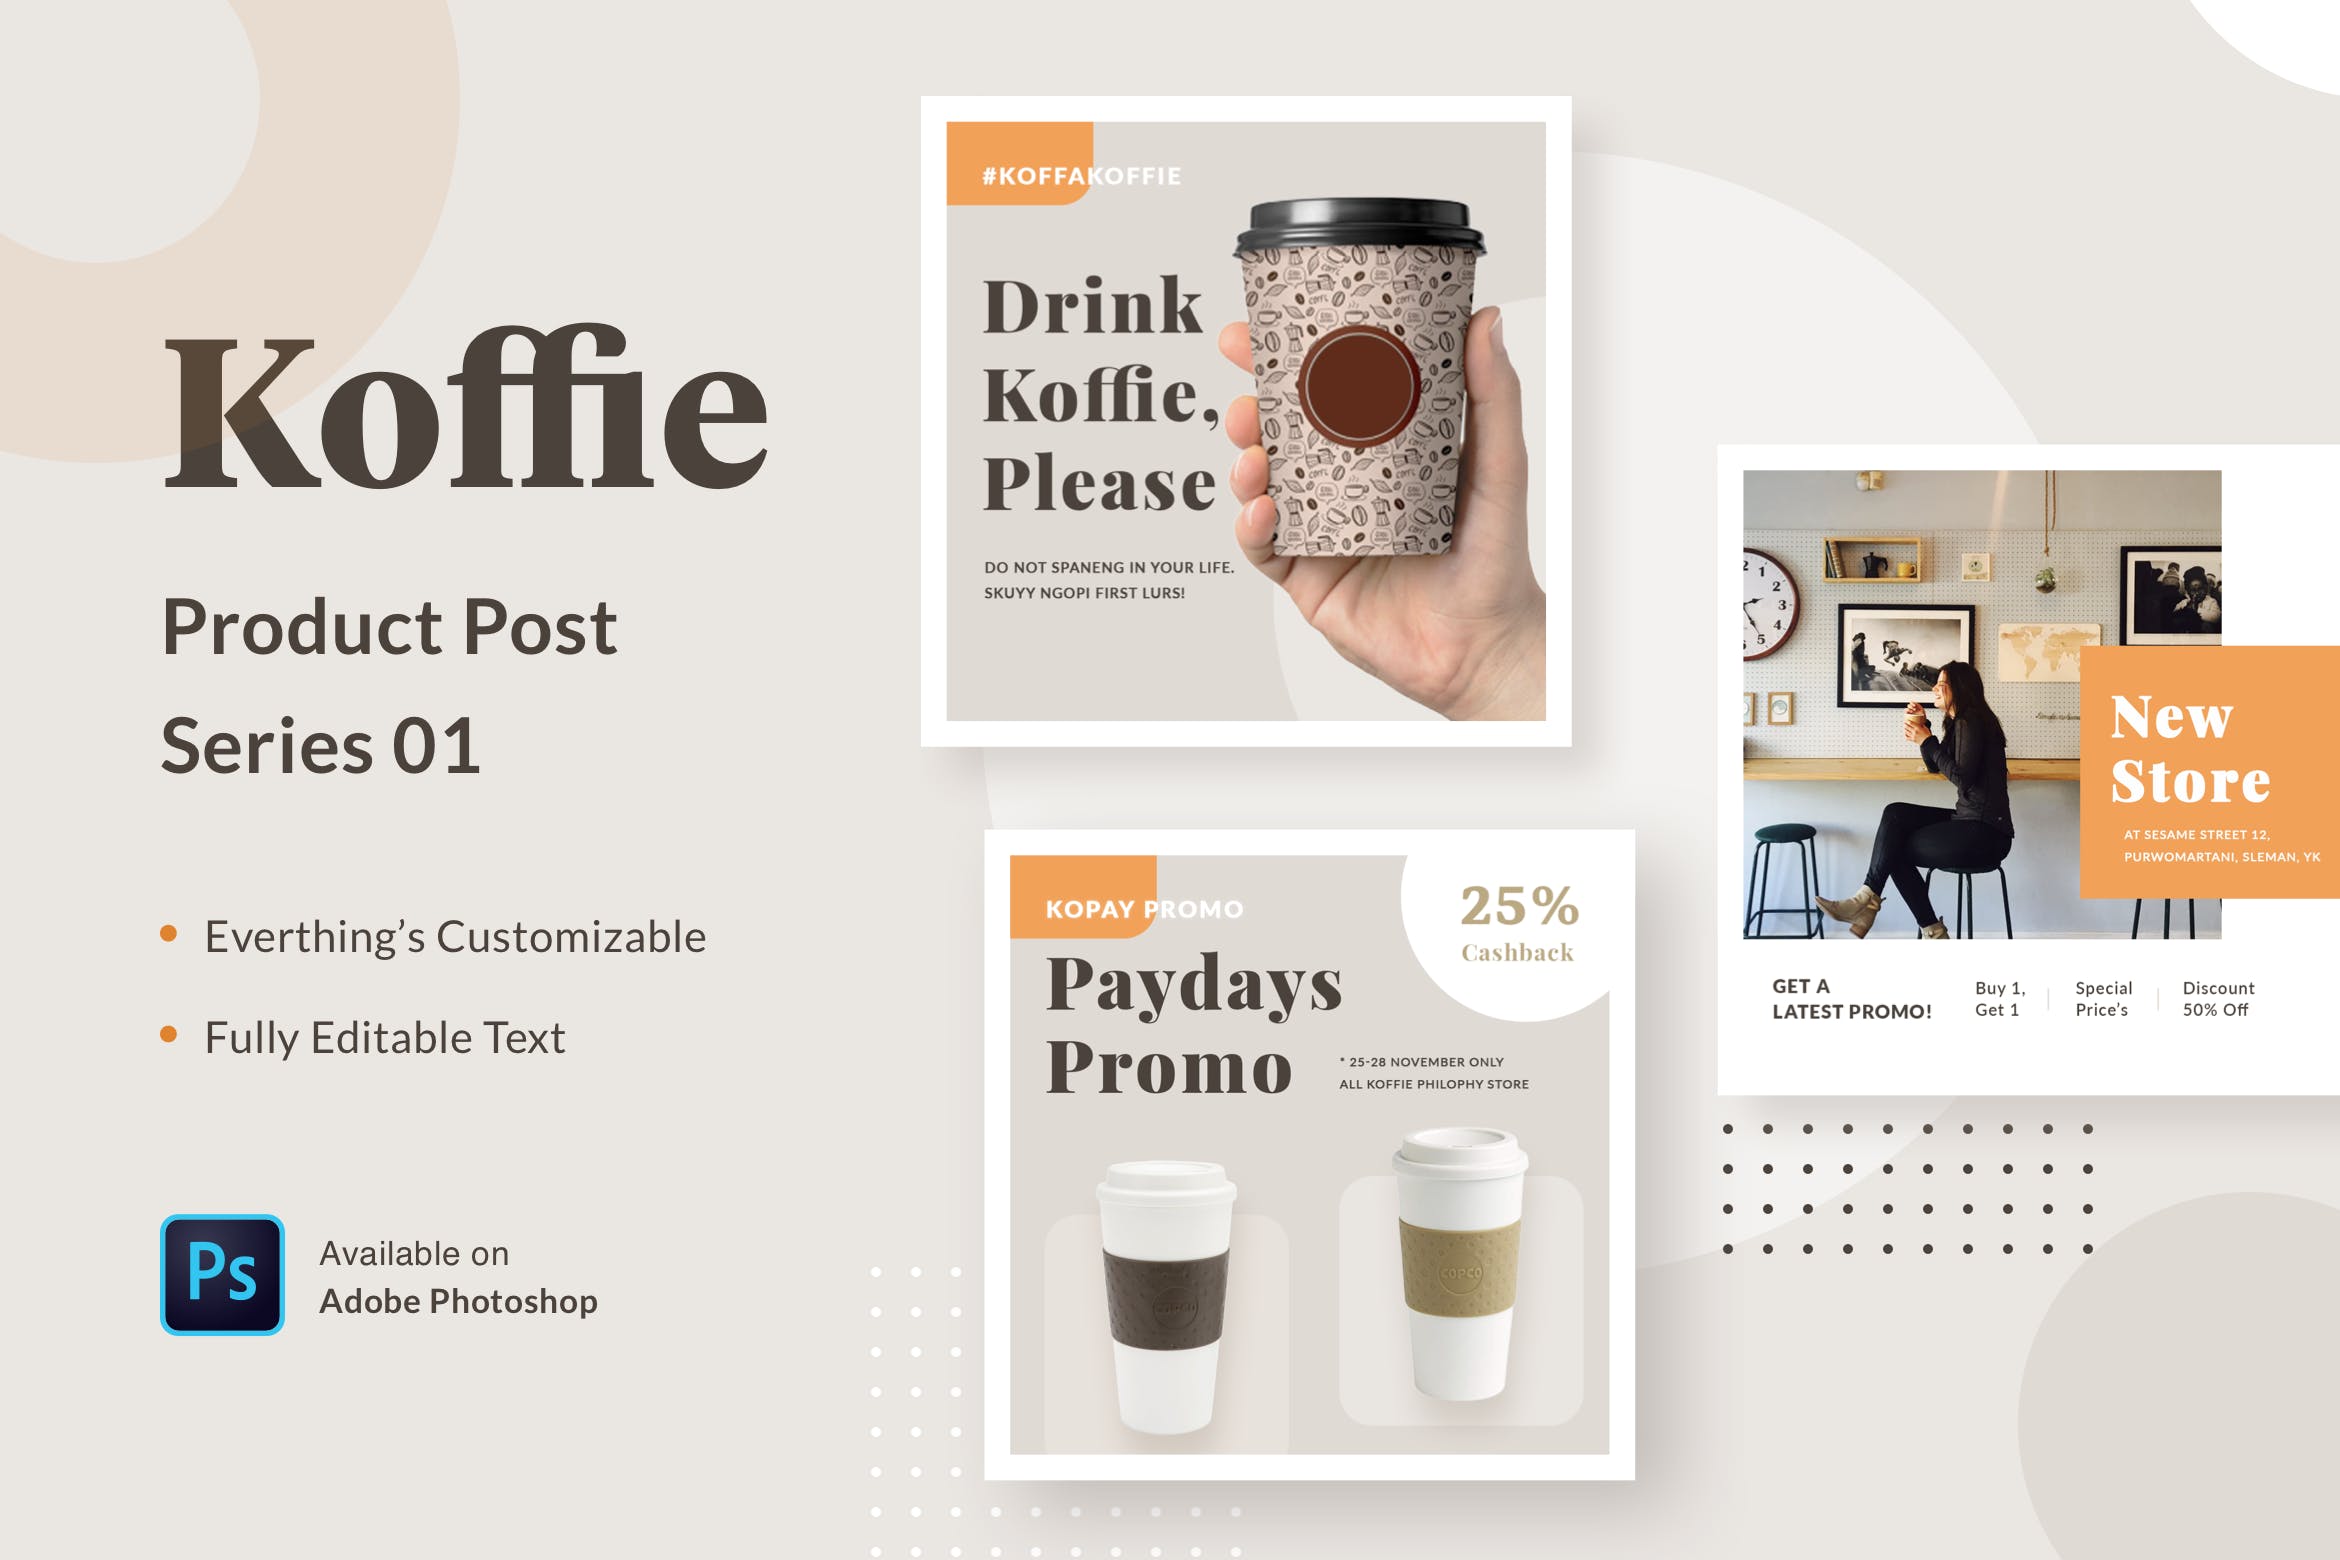 高端咖啡品牌广告设计PSD模板v01 Koffie Product – Series 01插图